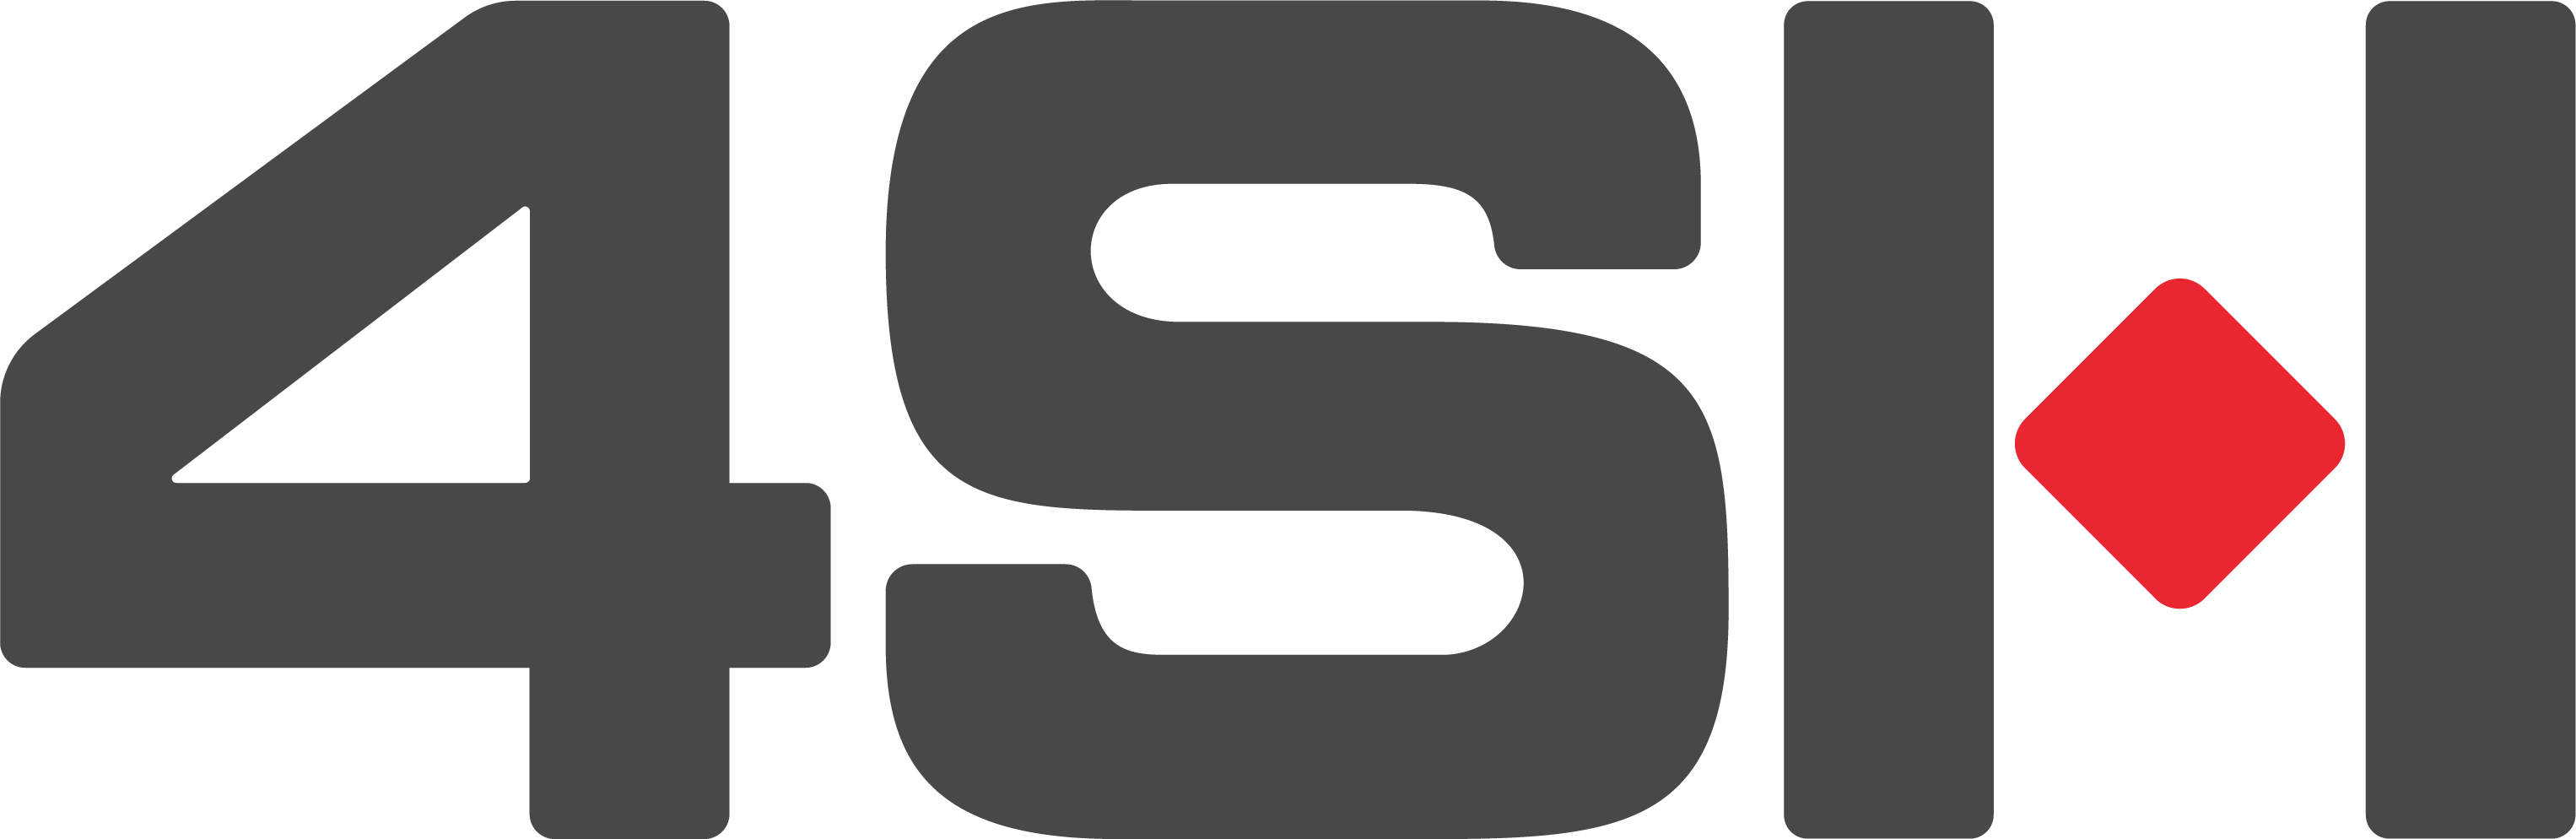 4SH logo